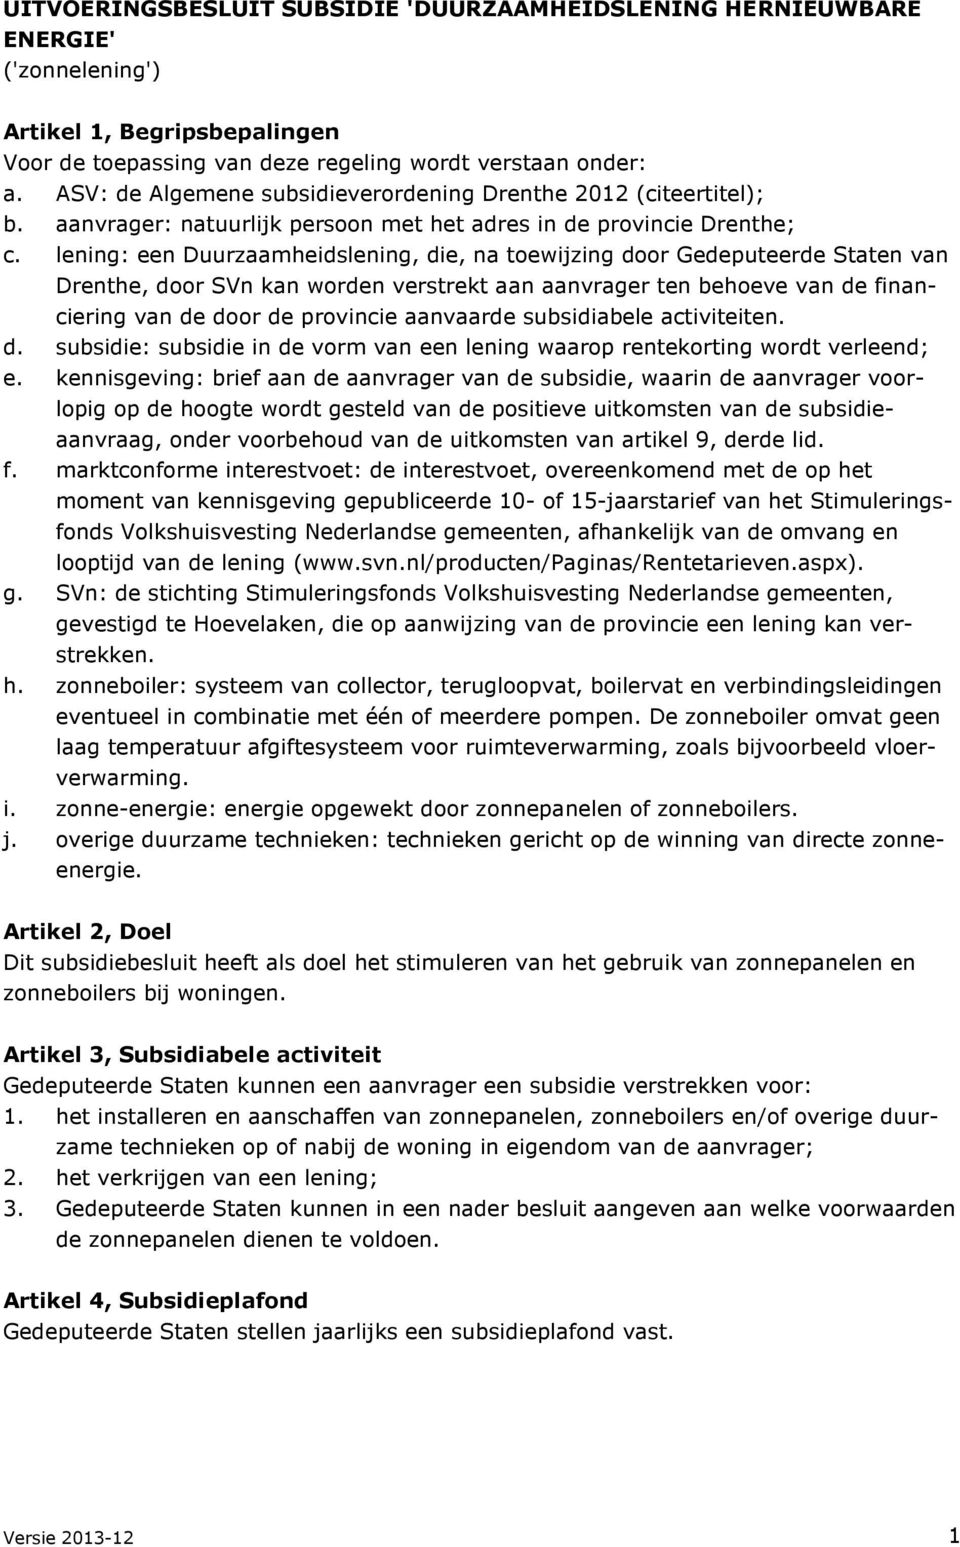 lening: een Duurzaamheidslening, die, na toewijzing door Gedeputeerde Staten van Drenthe, door SVn kan worden verstrekt aan aanvrager ten behoeve van de financiering van de door de provincie